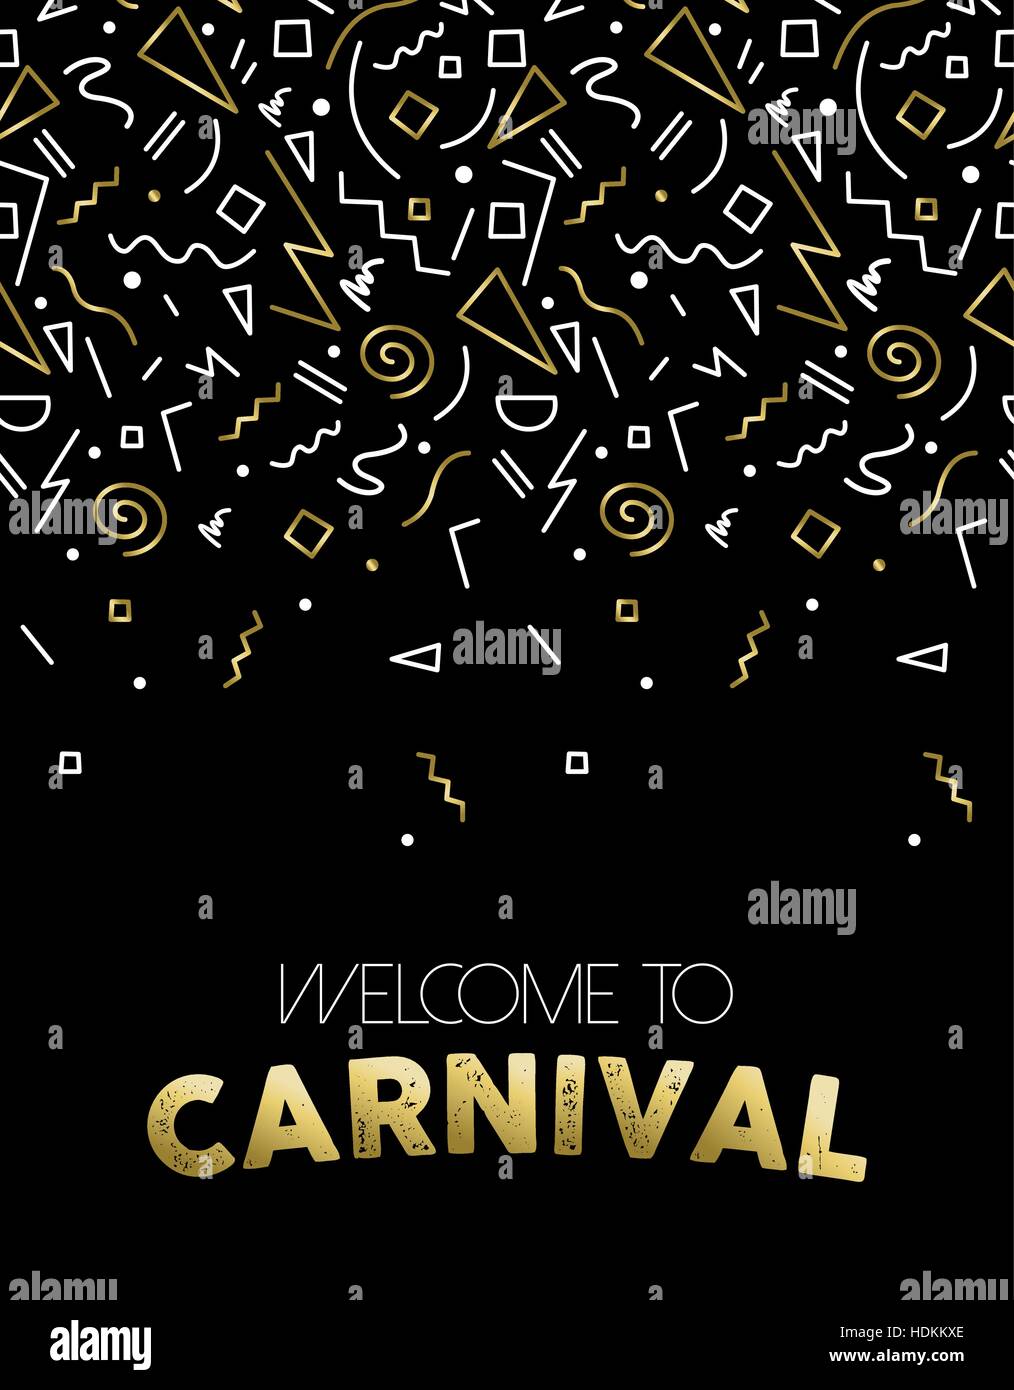 Willkommen Sie bei Karneval Abbildung, gold Party Konfetti in abstrakten linearen Stil für Event-Plakat, Karte oder Einladung. EPS10 Vektor. Stock Vektor